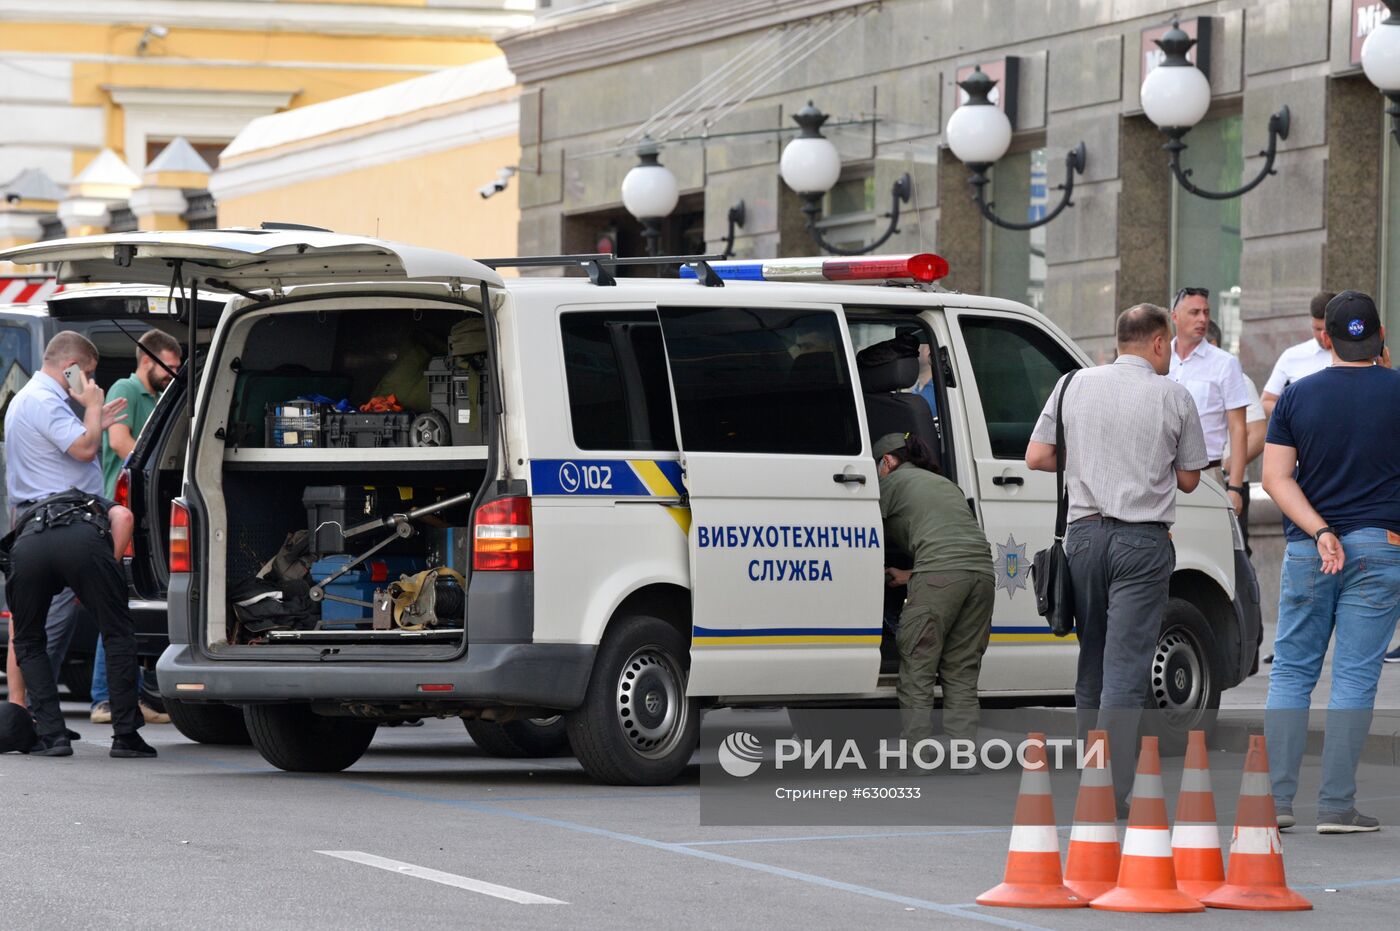 Неизвестный угрожает взорвать бомбу в банке в центре Киева